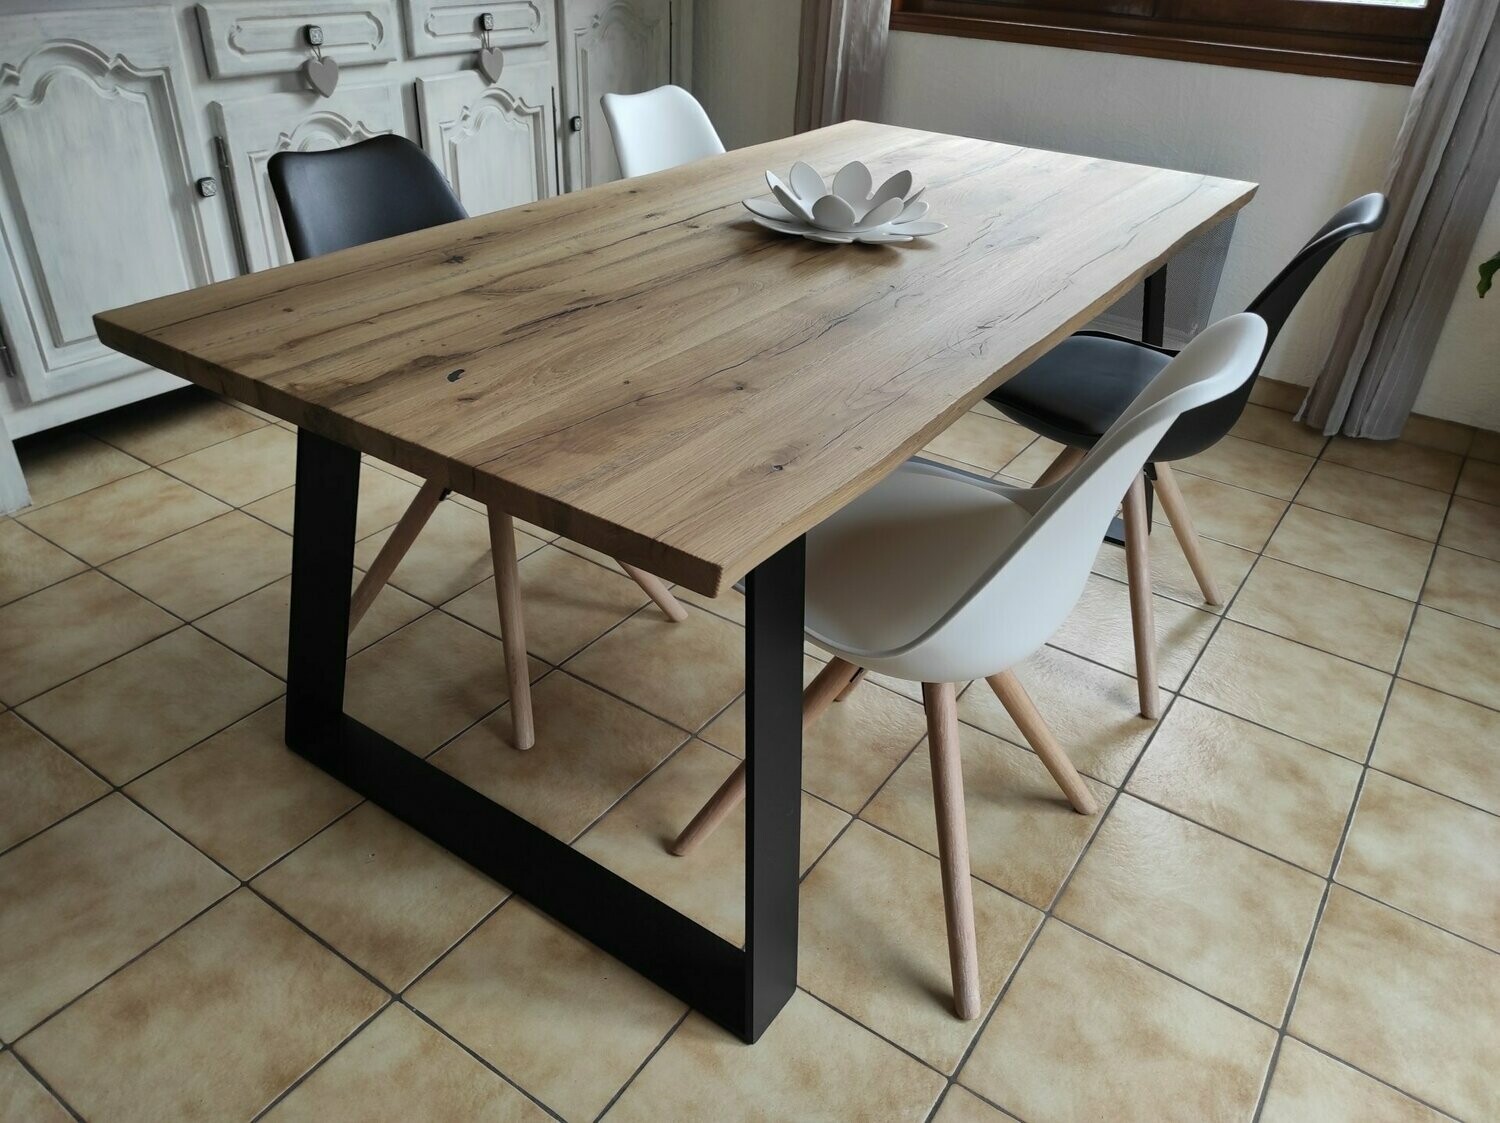 Plateau de table en chêne vintage 60x60cm Ep 40mm